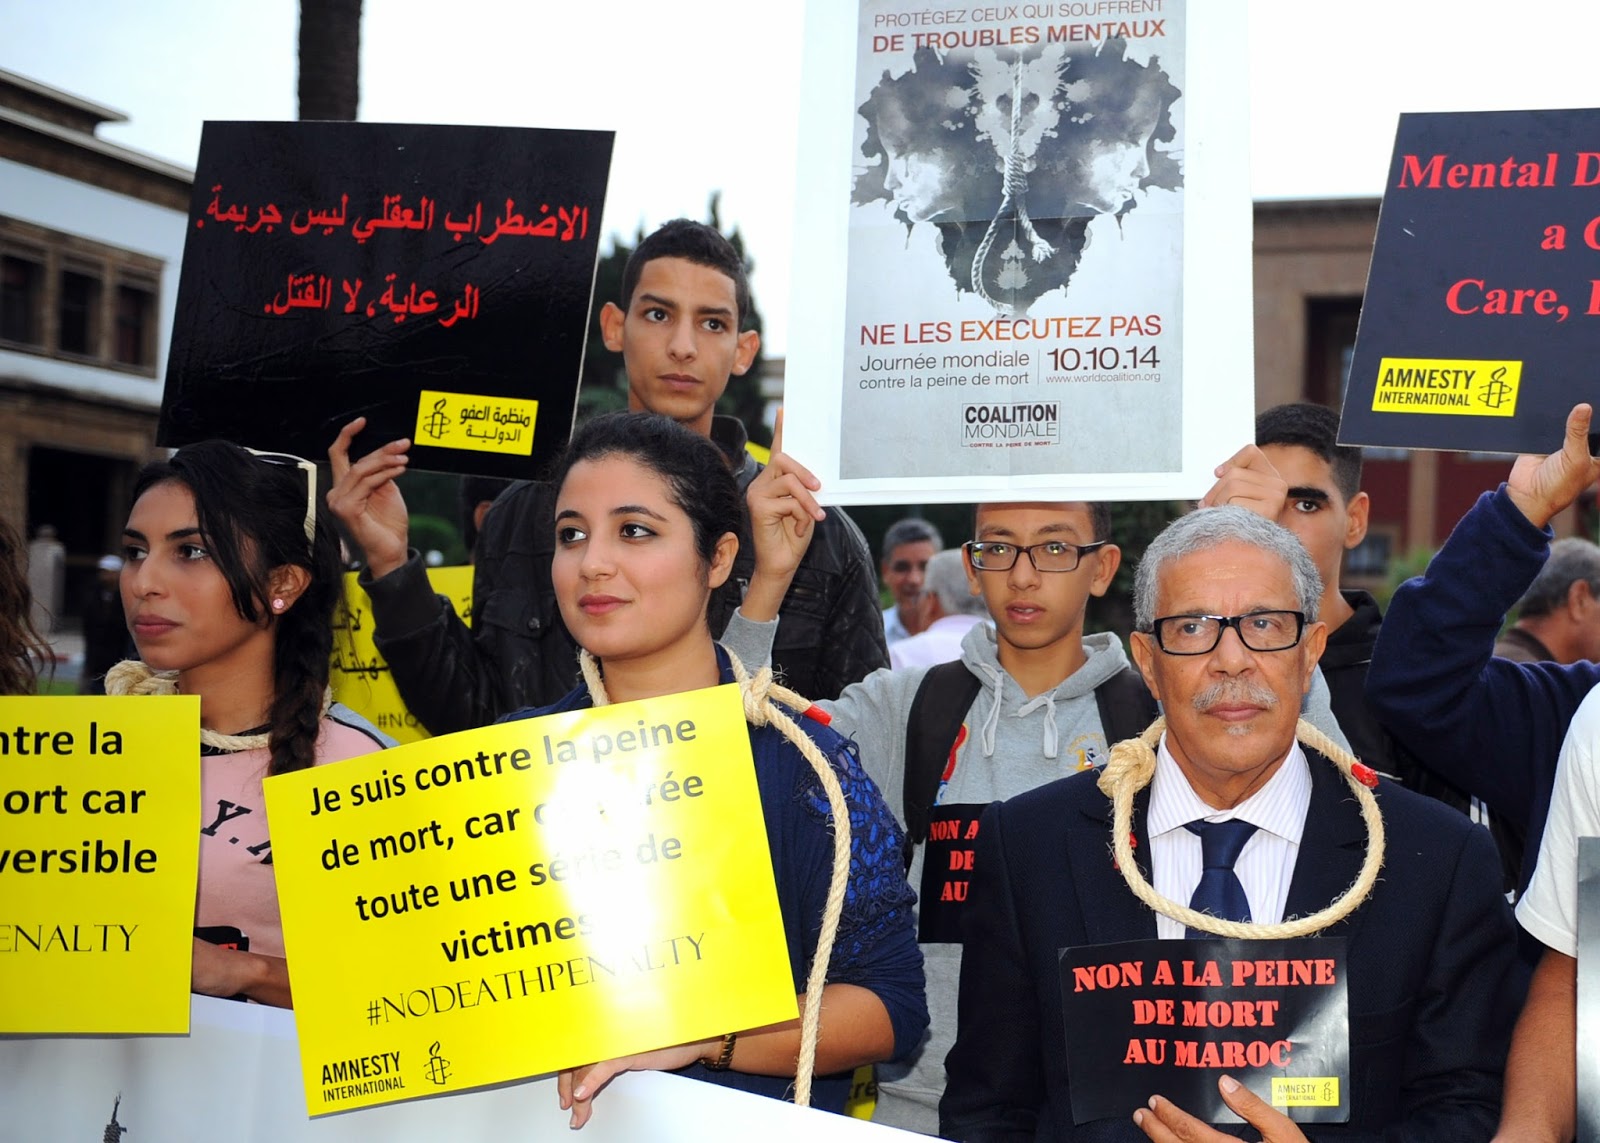 بلاغ من الإئتلاف المغربي من أجل إلغاء عقوبة الإعدام من جديد، التنفيذ الجماعي لعقوبة الإعدام بالأردن